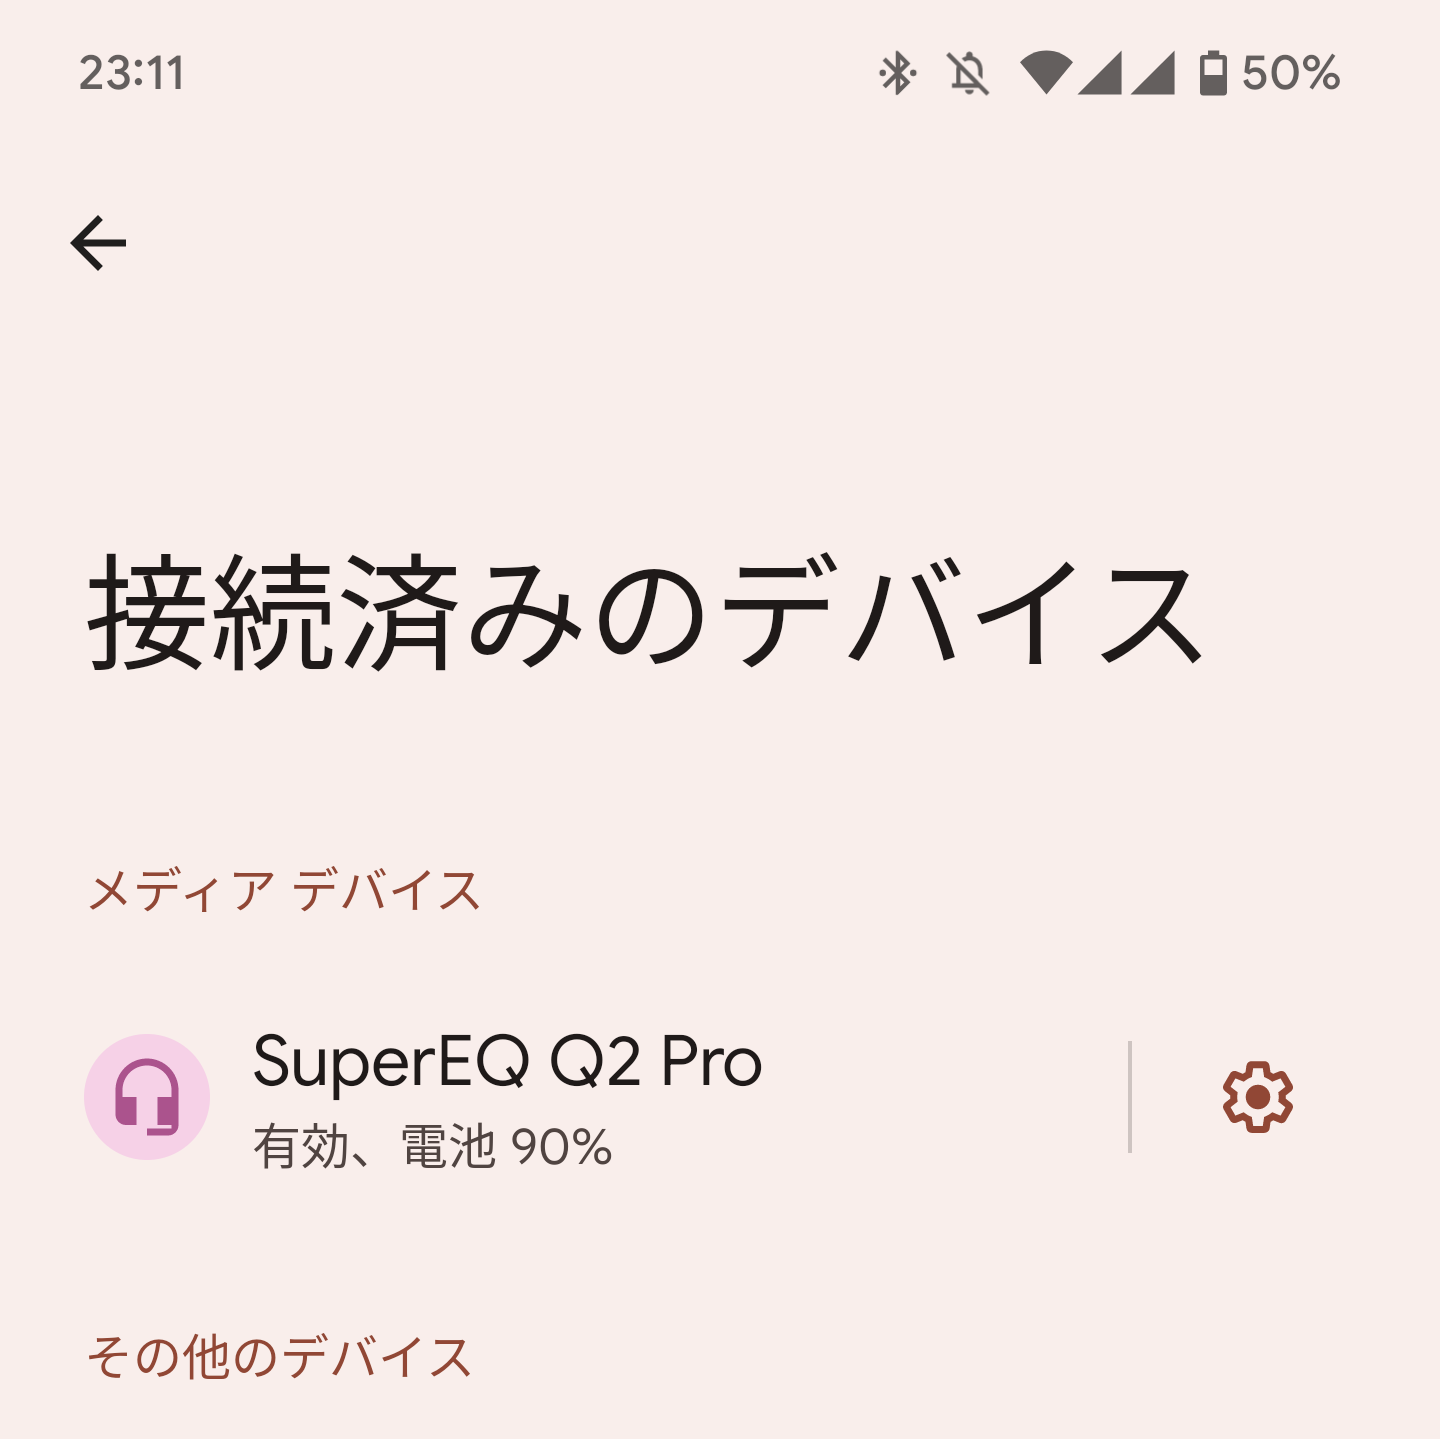 SuperEQ Q2 Proのバッテリー性能